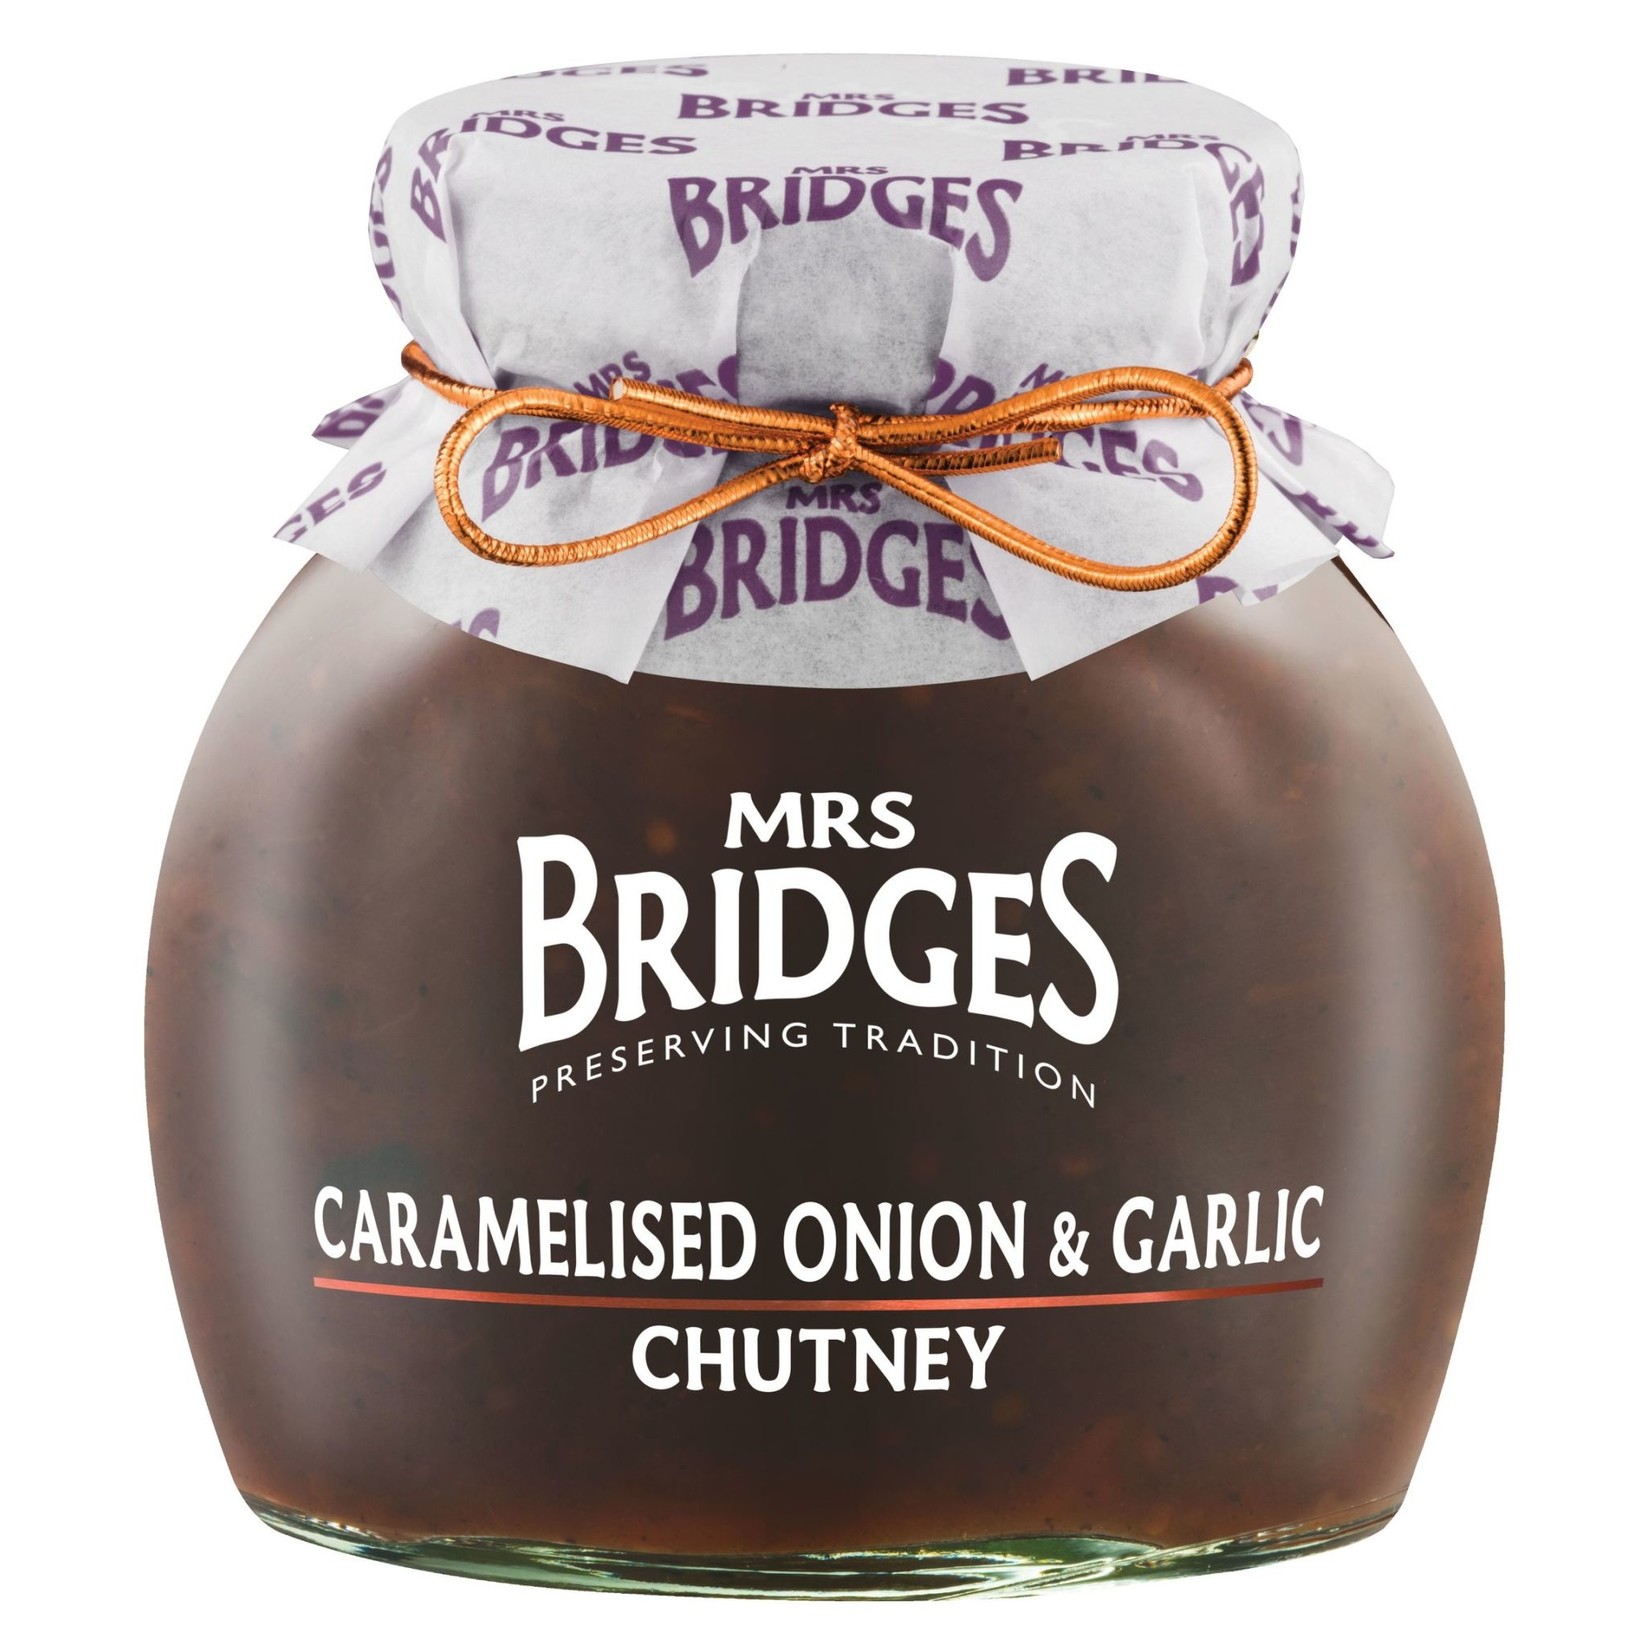 MRS BRIDGES MRS BRIDGES Caramelized Onion & Garlic Chutney 300g